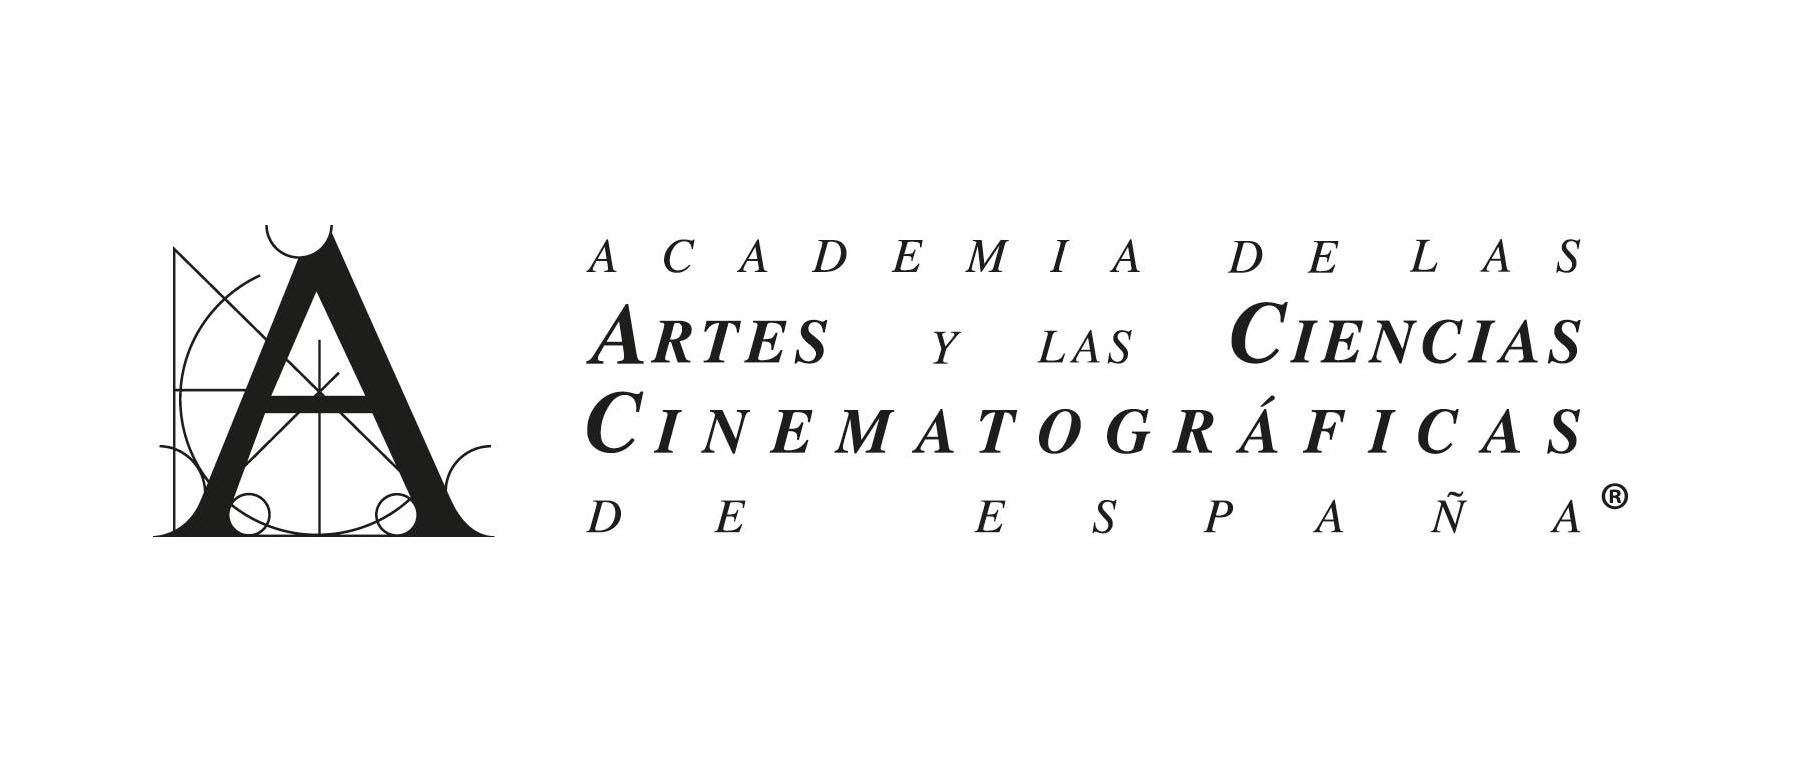 Madrid prepara un encuentro mundial de Academias de Cine